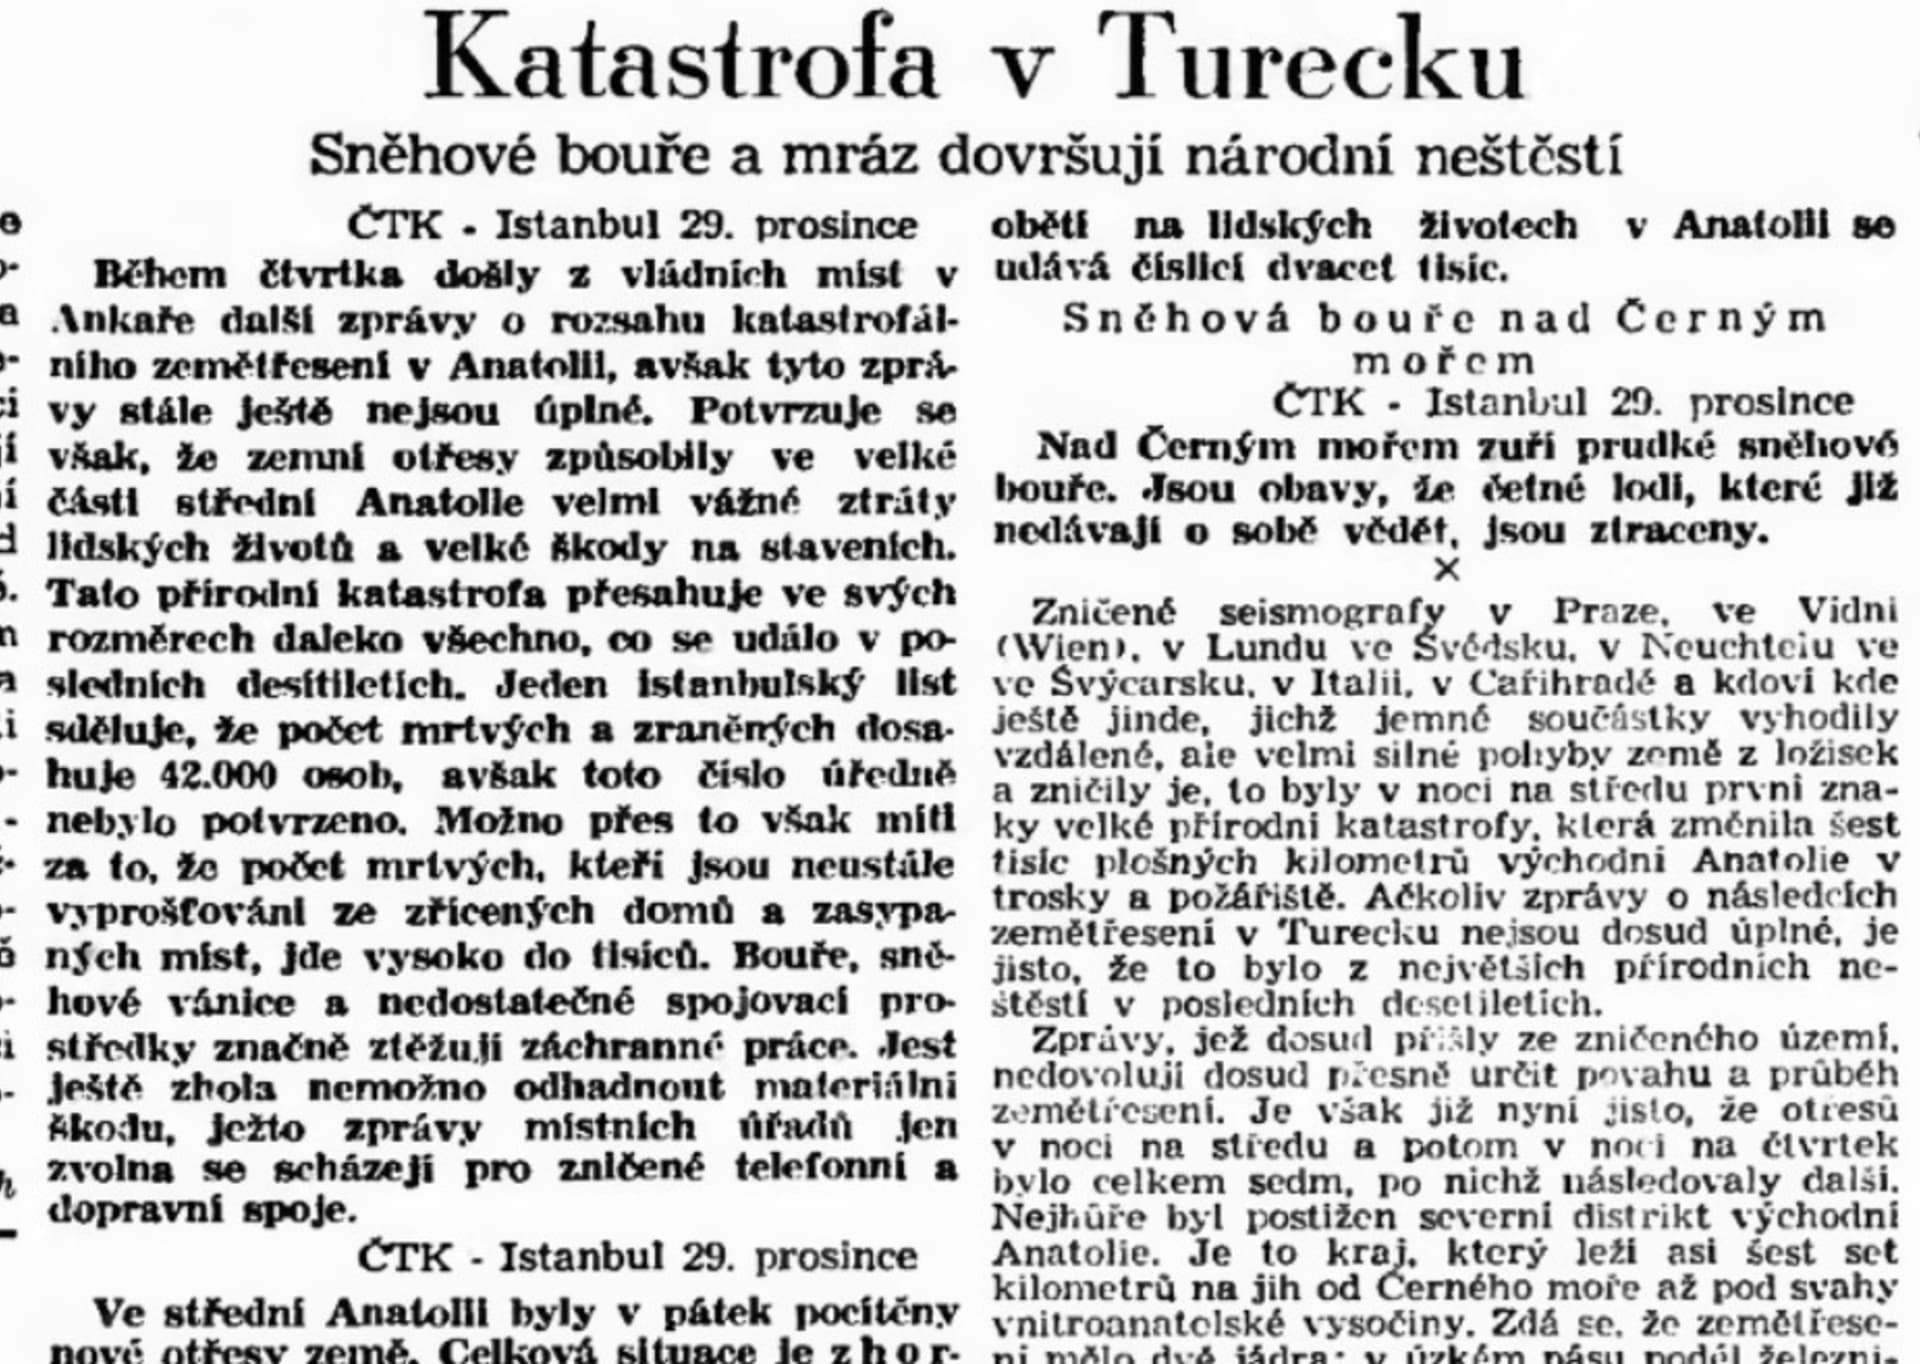 Zprávy ČTK o zemětřesení z 27. prosince 1939. Zdroj Národní digitální knihovna Kramerius.